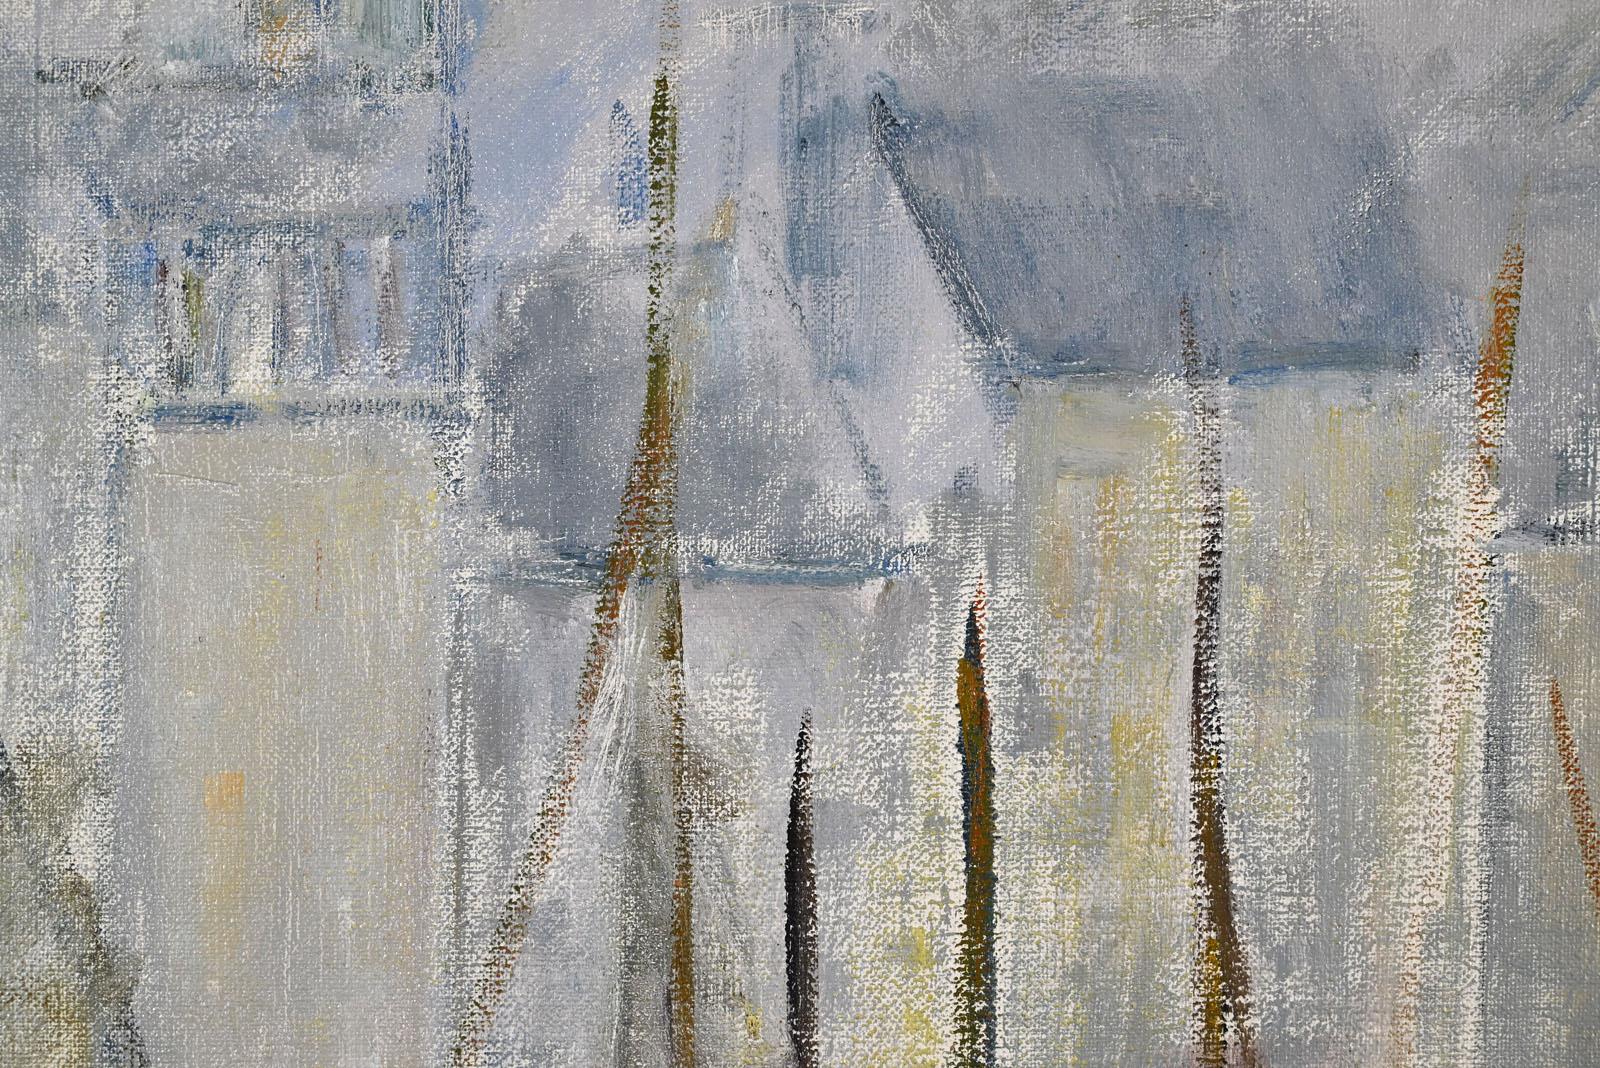 Lyne SEYBEL (1919-2009)
Tempête à Honfleur

Huile sur toile
Taille : 65 x 92 cm
Signé en bas à gauche.
En parfait état de conservation.
Avec un beau cadre

Provenance : Famille de l'artiste

Peinture vendue avec facture et certificat